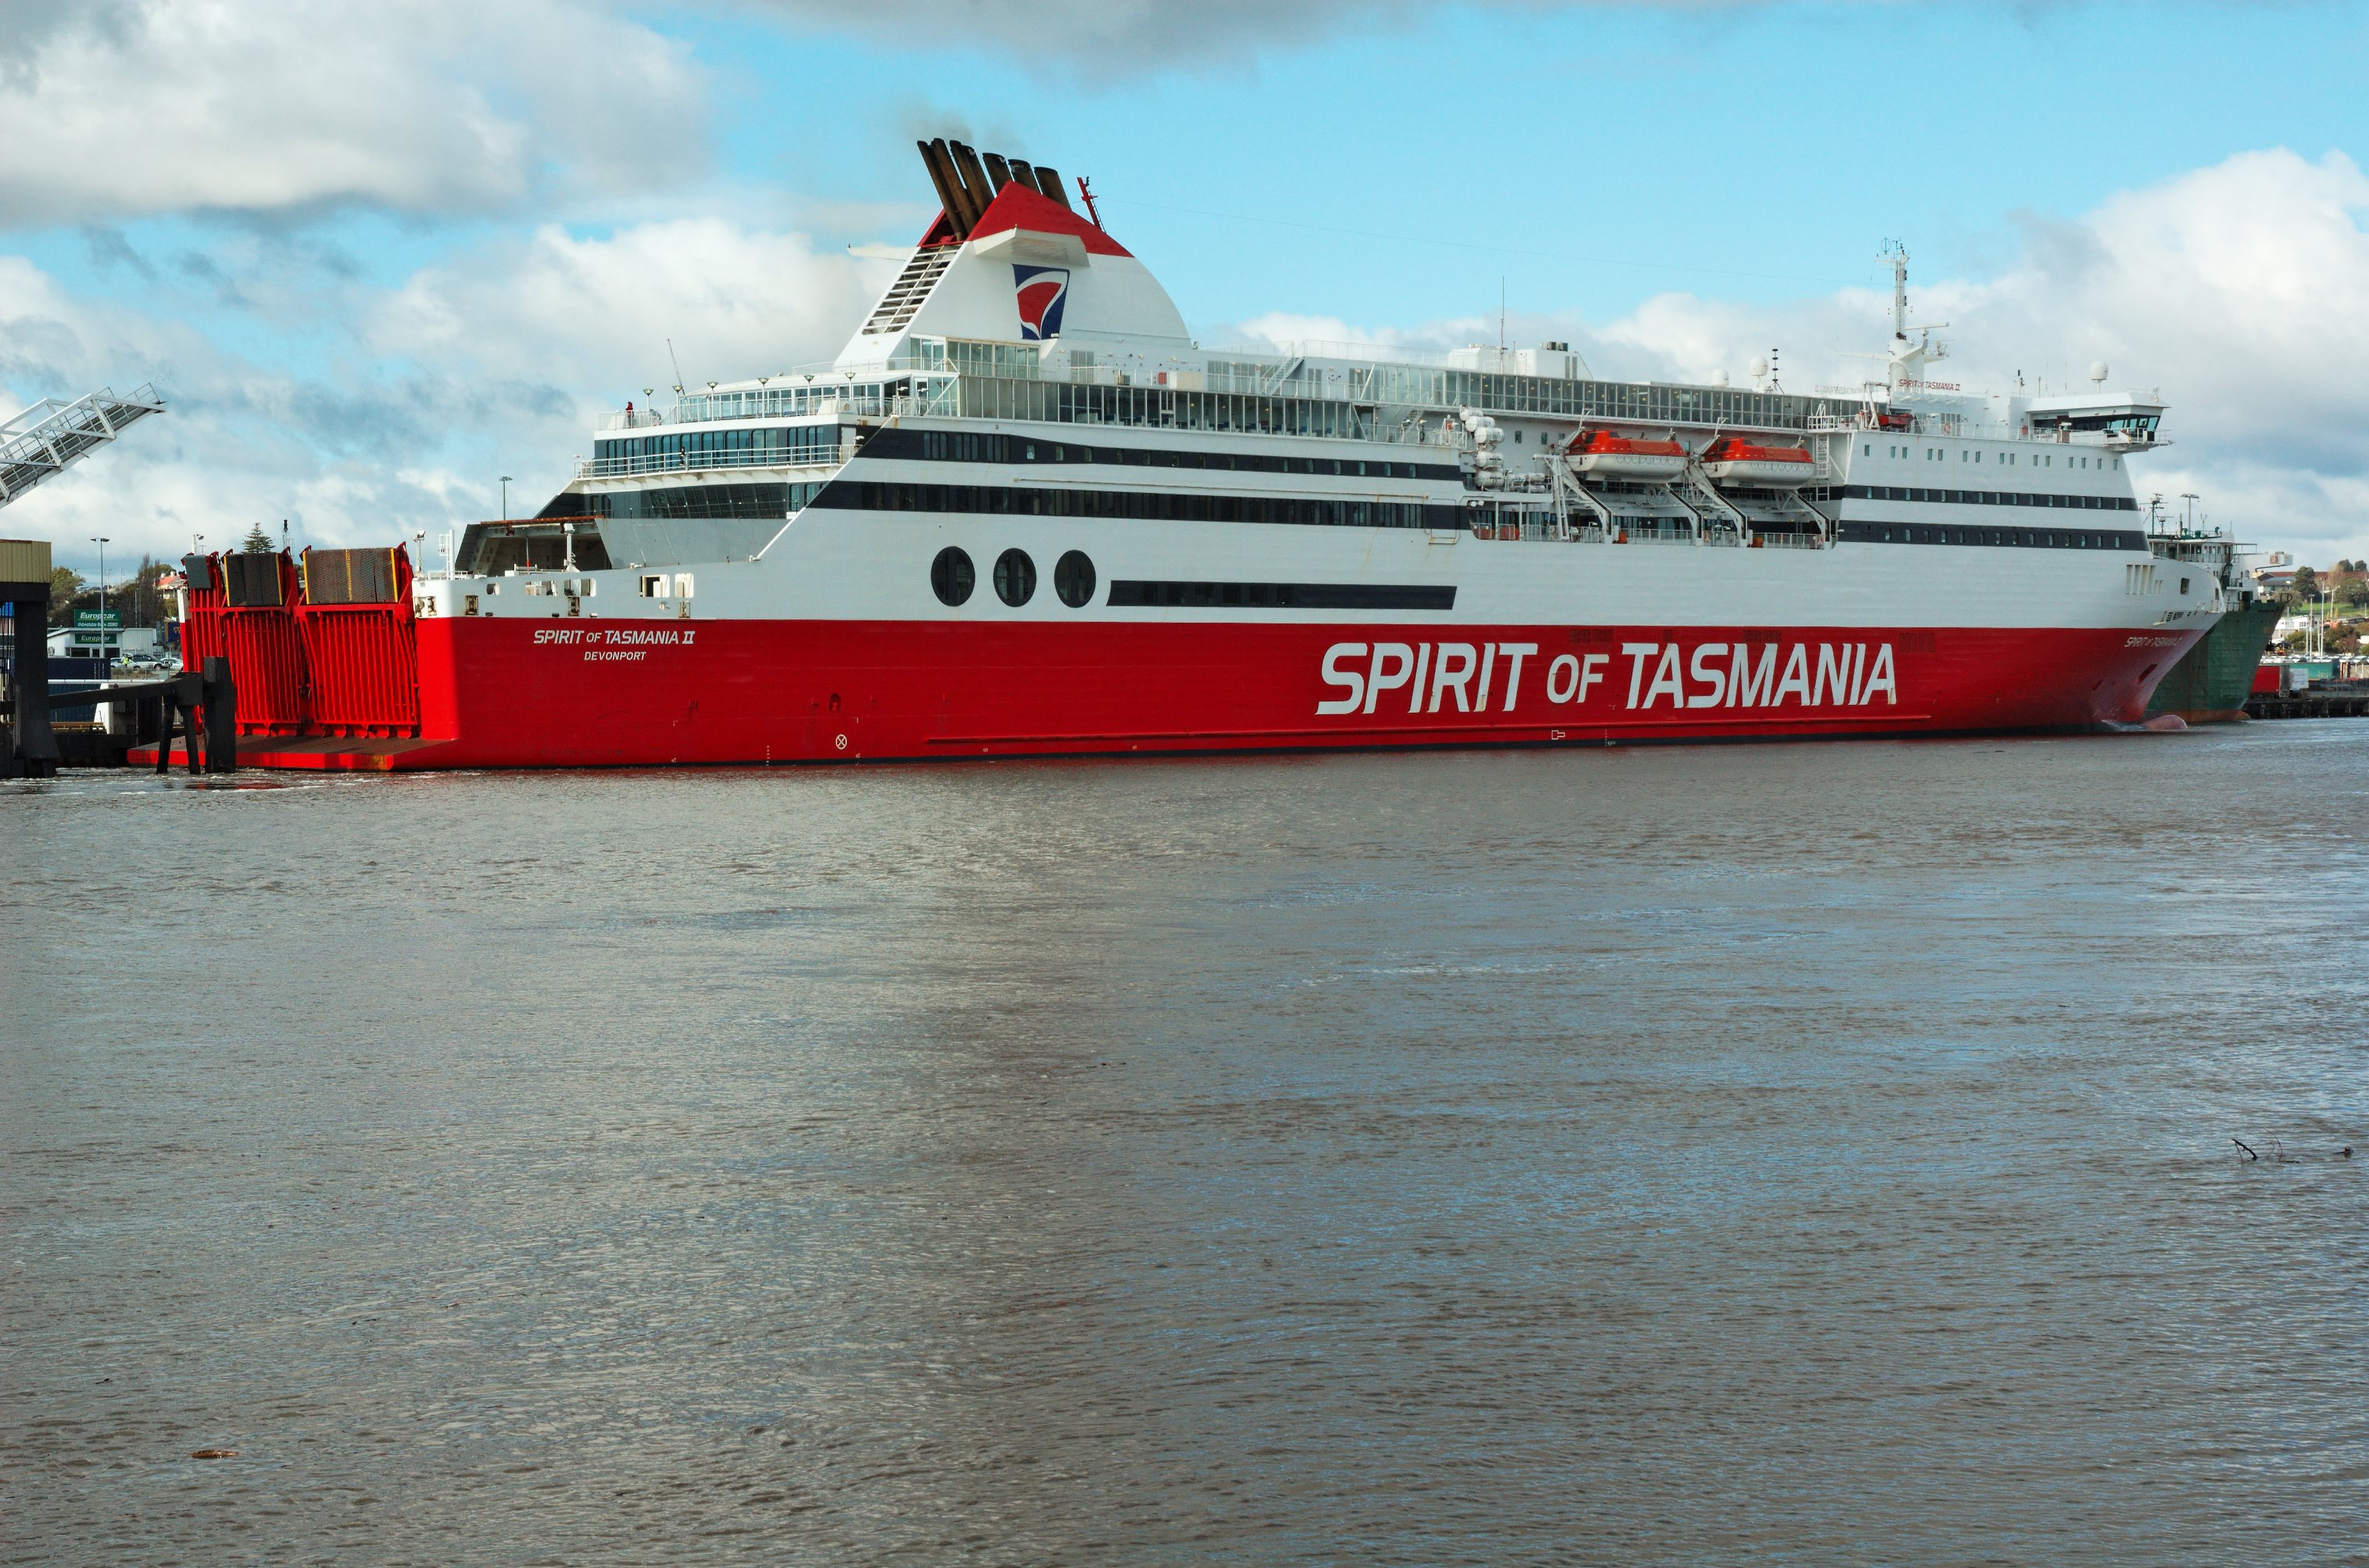 Spirit vessel. Паром Spirit of Tasmania. Спирит Вессел. Паром Барбарос автомобильный ропакс. Паром из Мельбурна в Тасманию фото и видео.